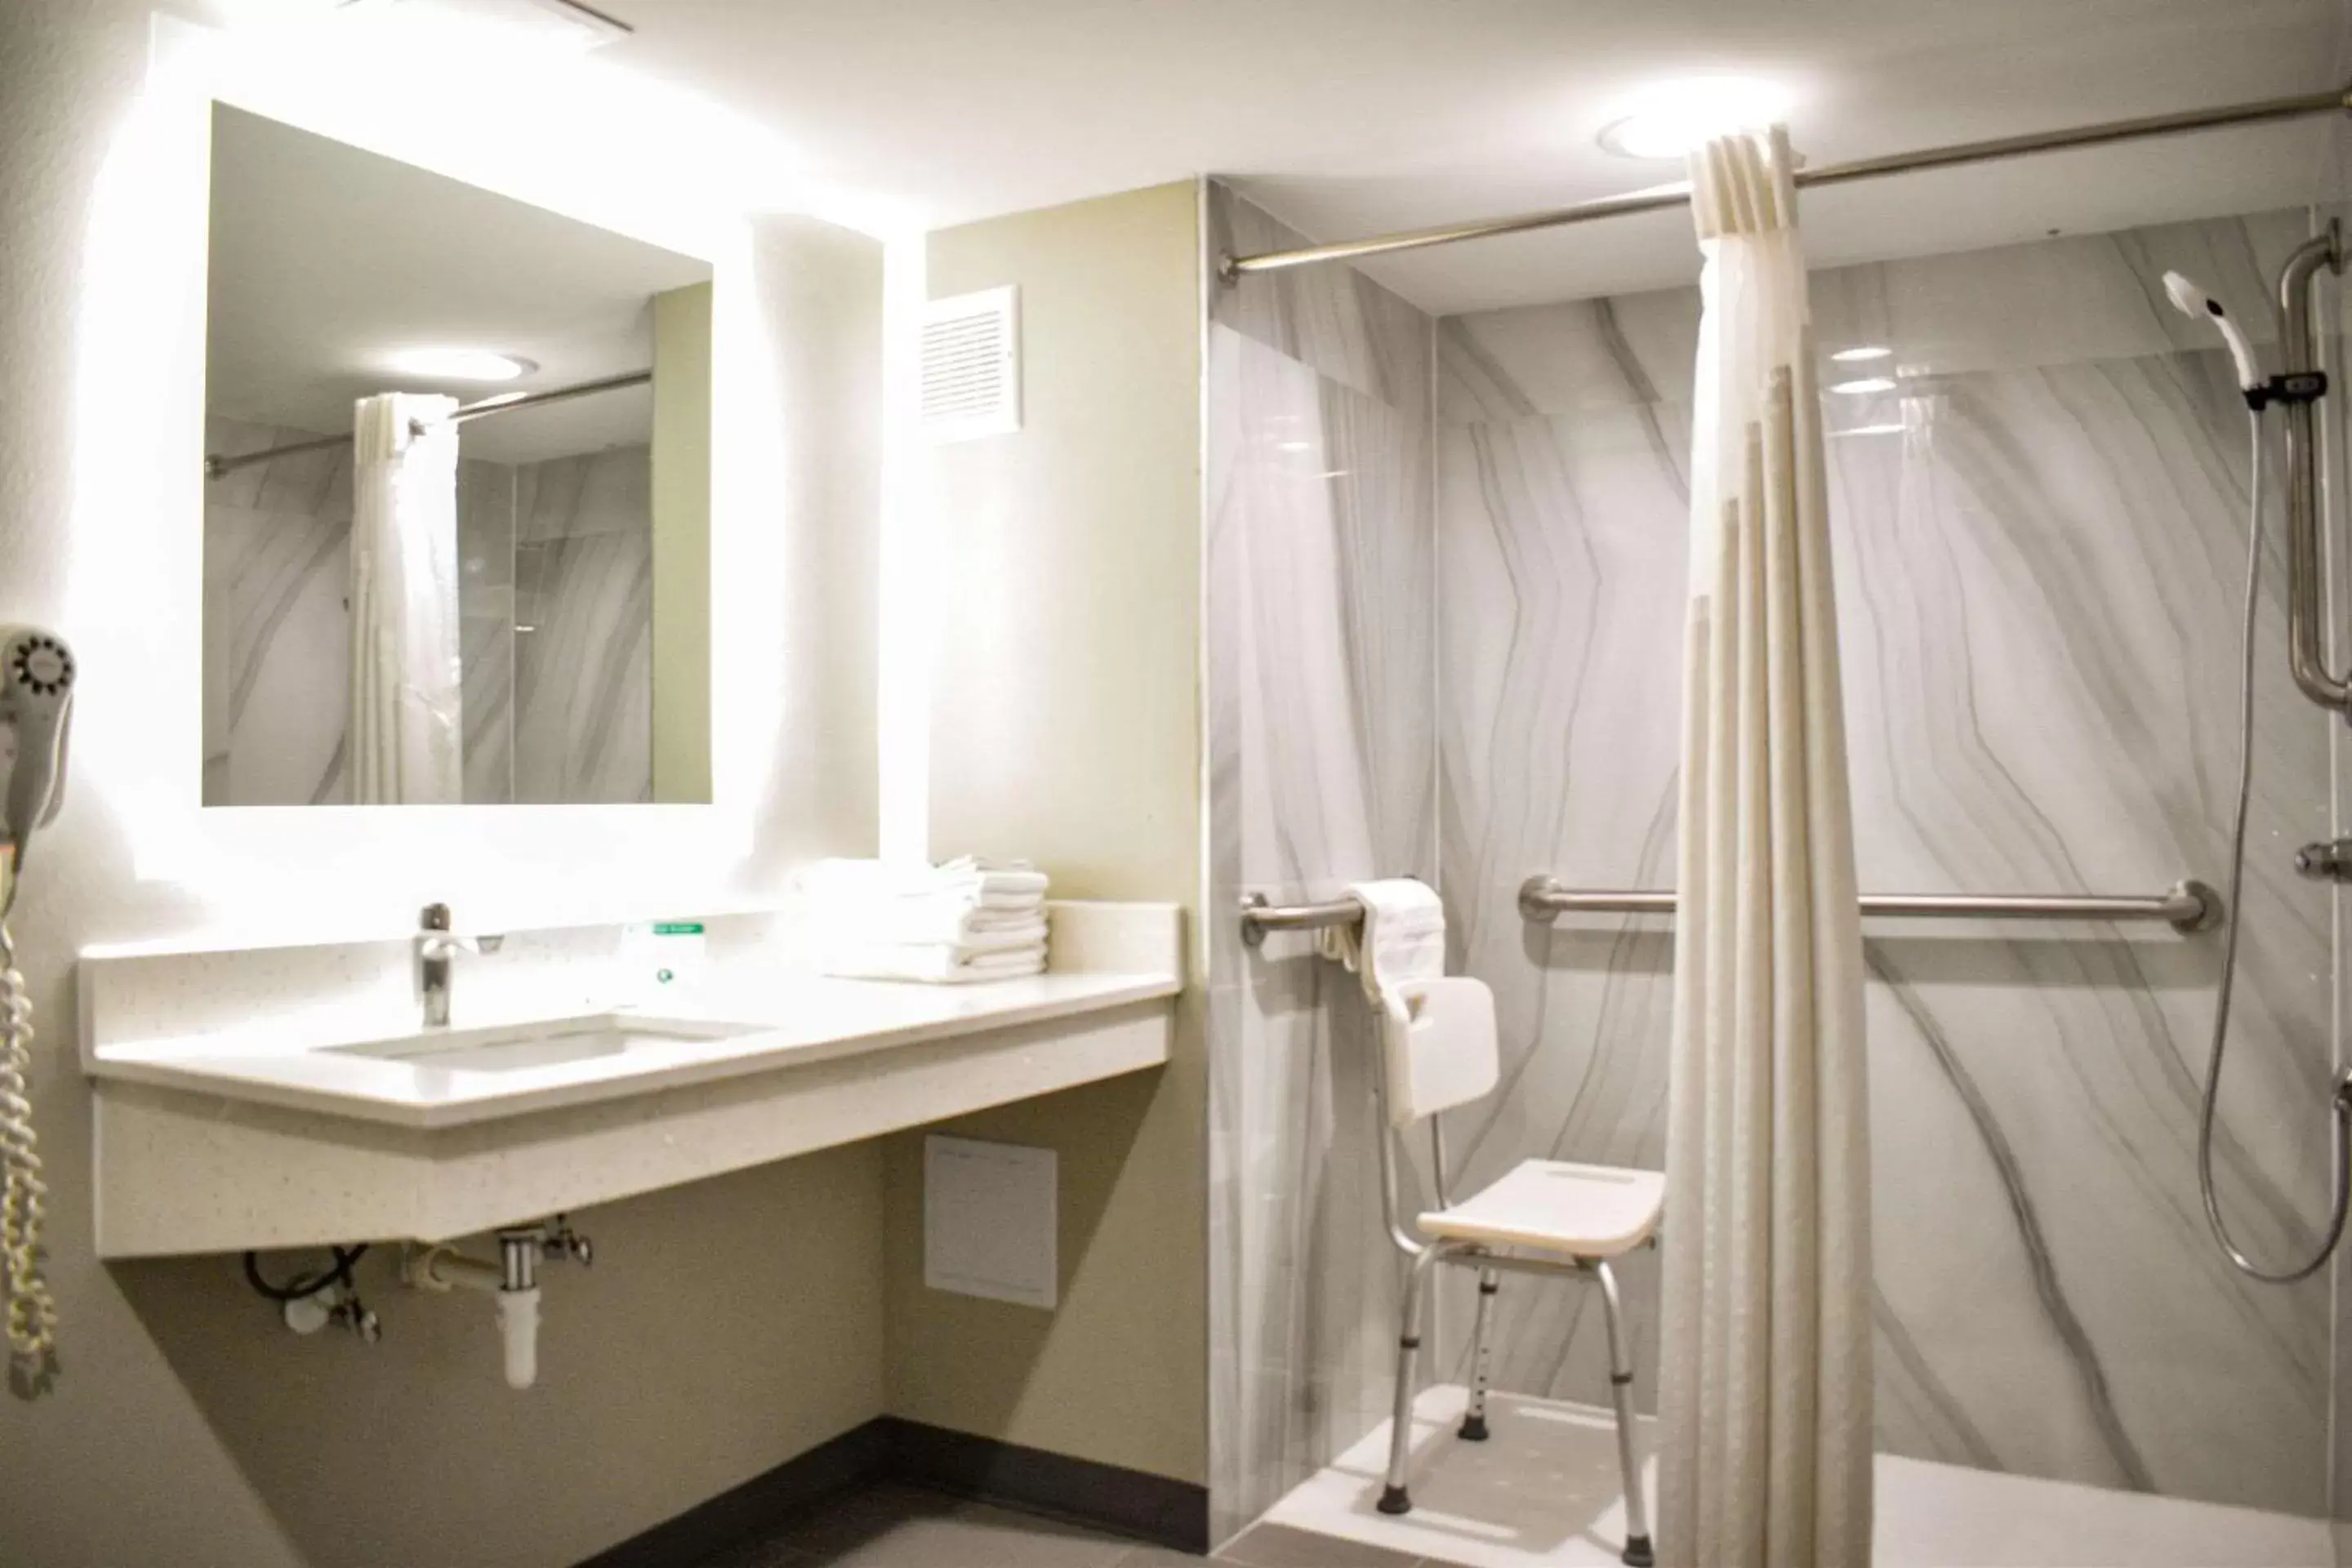 Bedroom, Bathroom in Rodeway Inn Hot Springs National Park Area